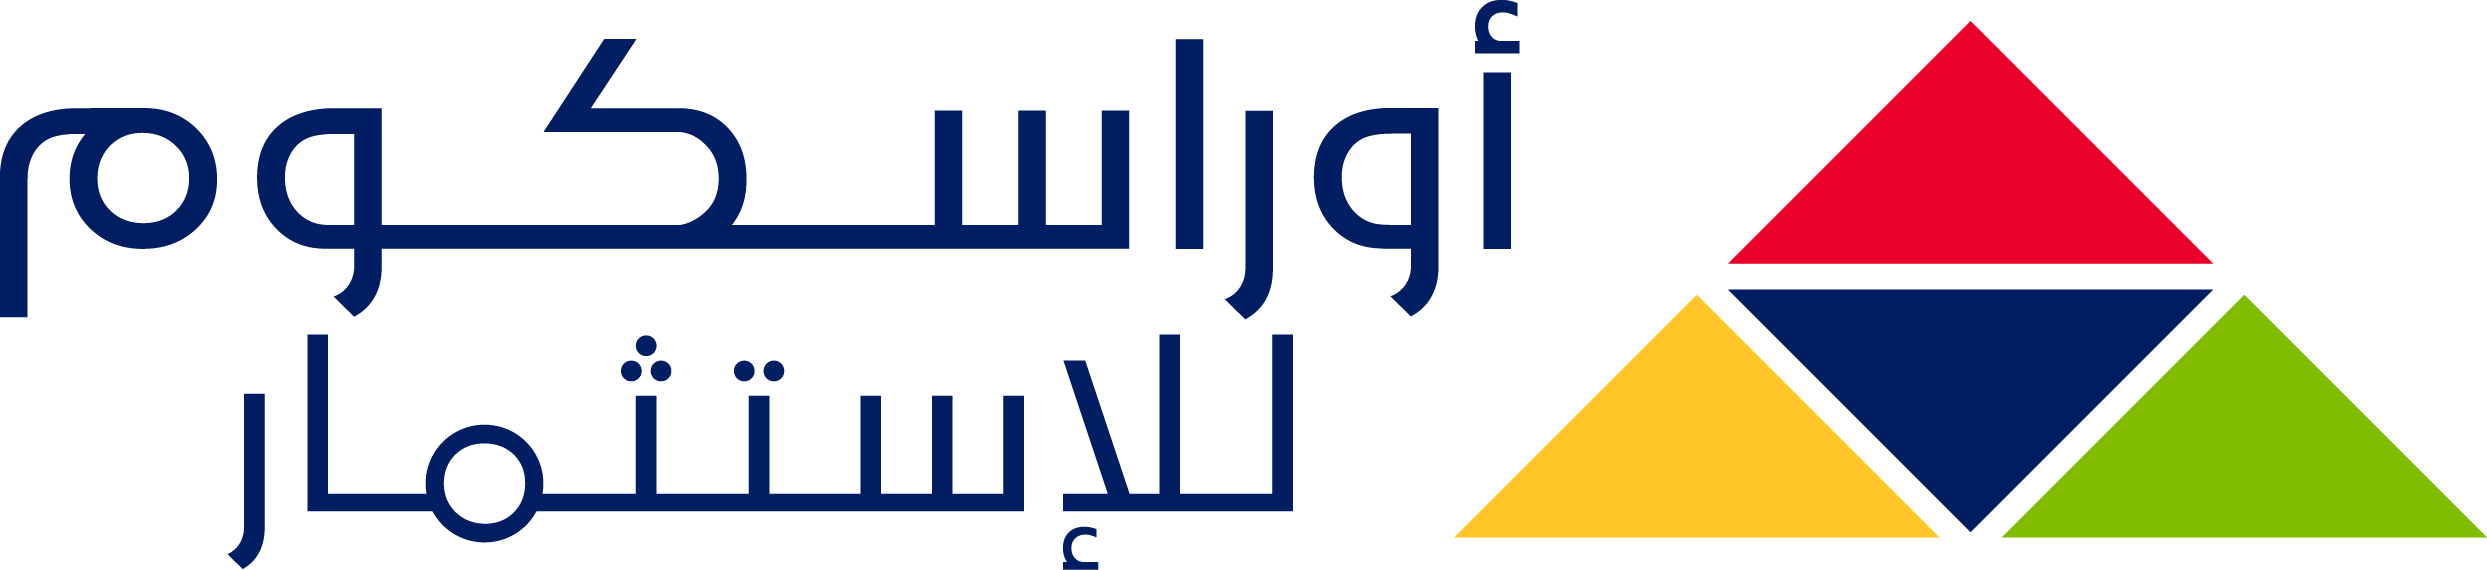 OIH Logo